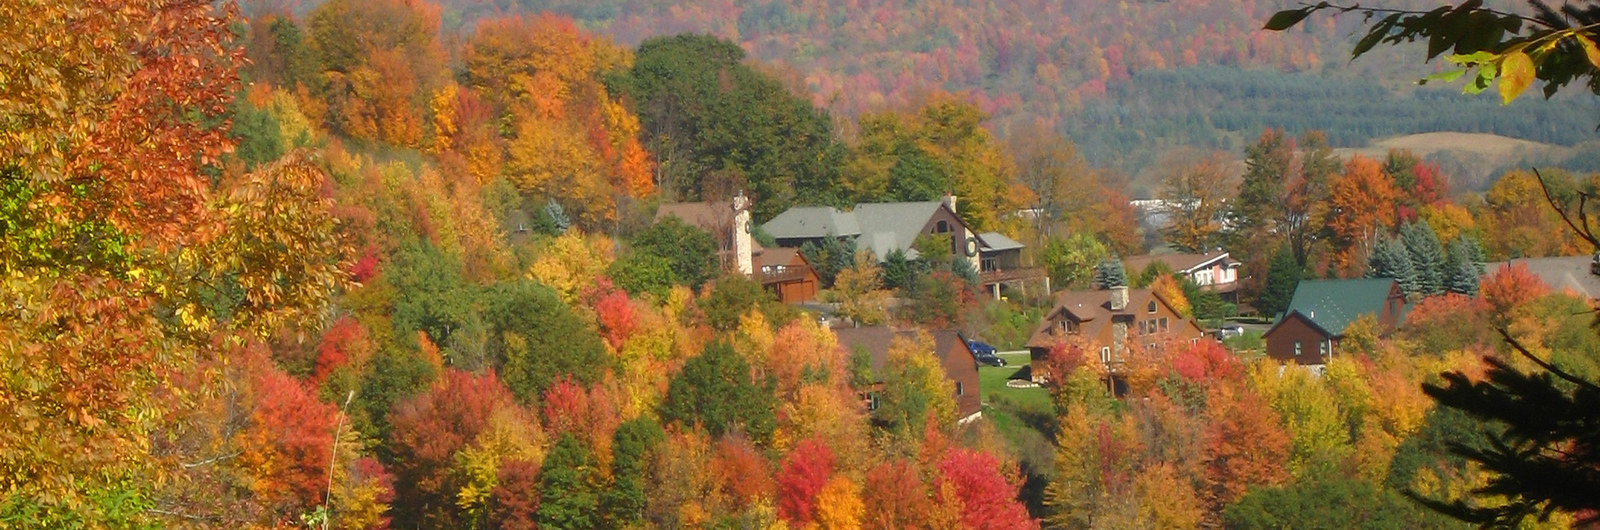 Fall foliage at Holiday Valley Resort